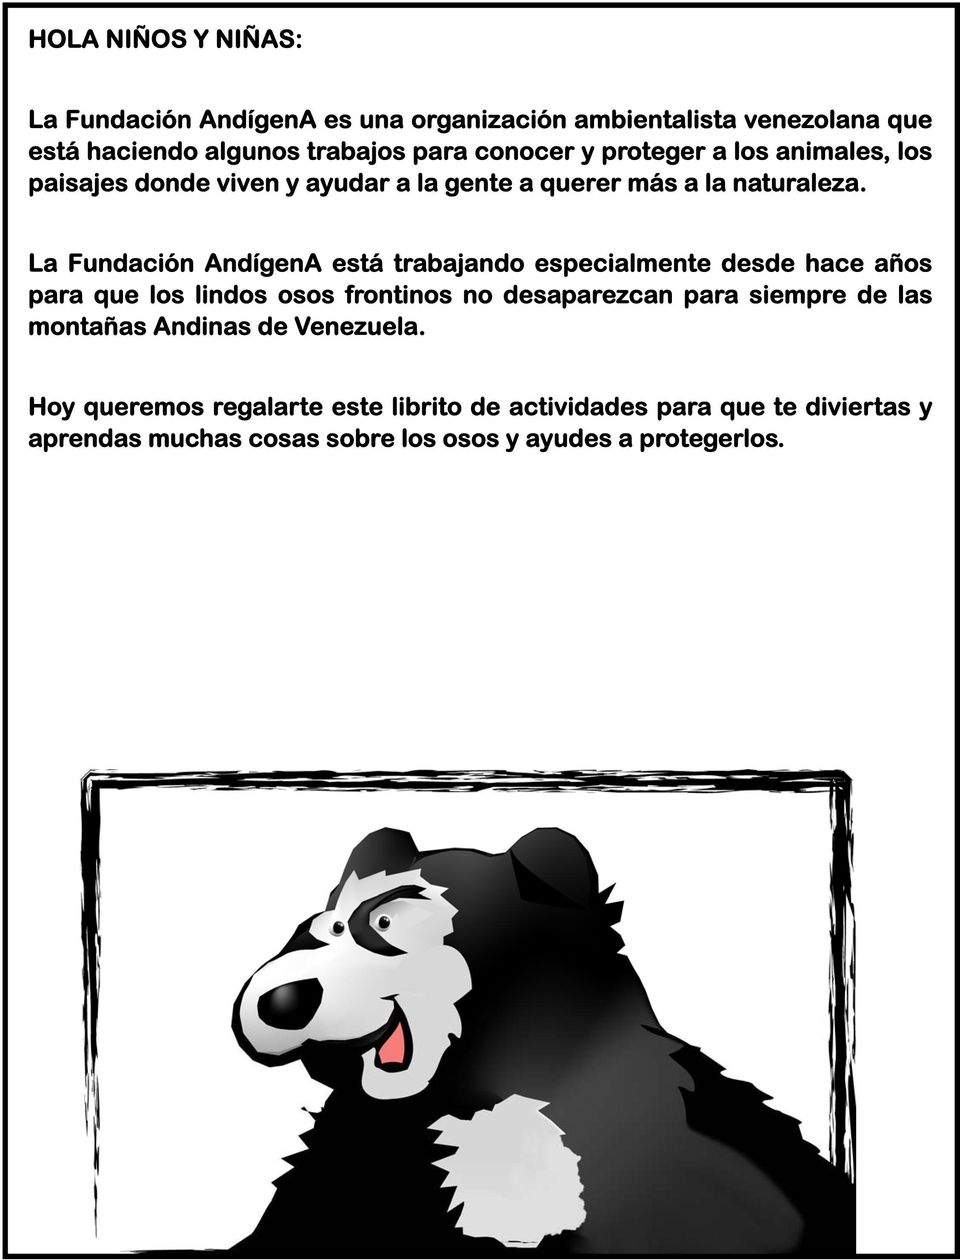 La Fundación AndígenA está trabajando especialmente desde hace años para que los lindos osos frontinos no desaparezcan para siempre de